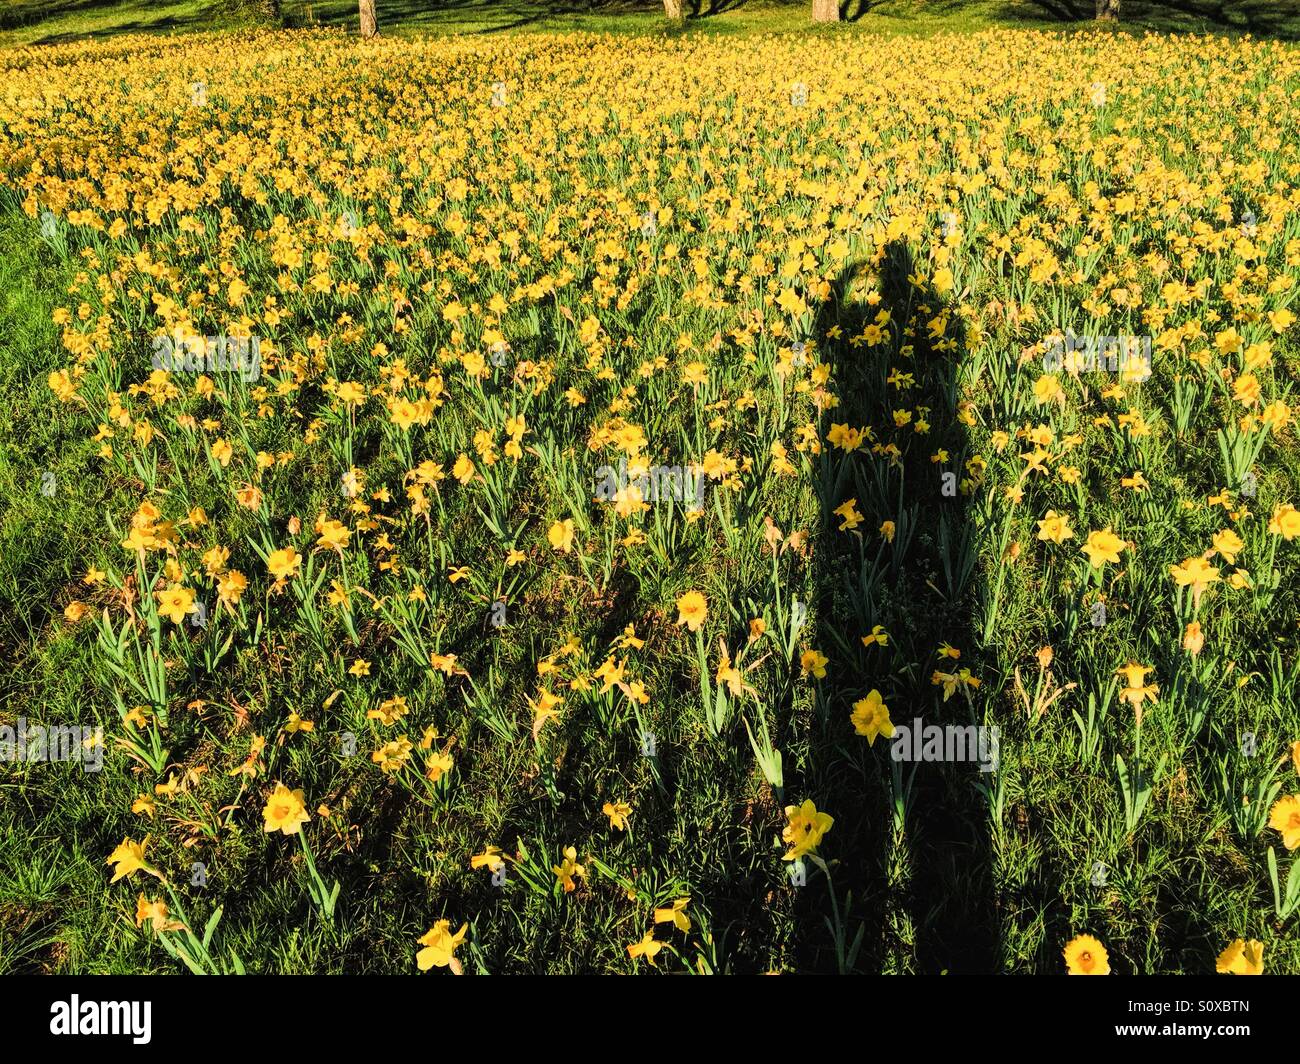 Einen langen Schatten des Fotografen auf ein Beet schöne gelbe Narzisse Blumen. Stockfoto